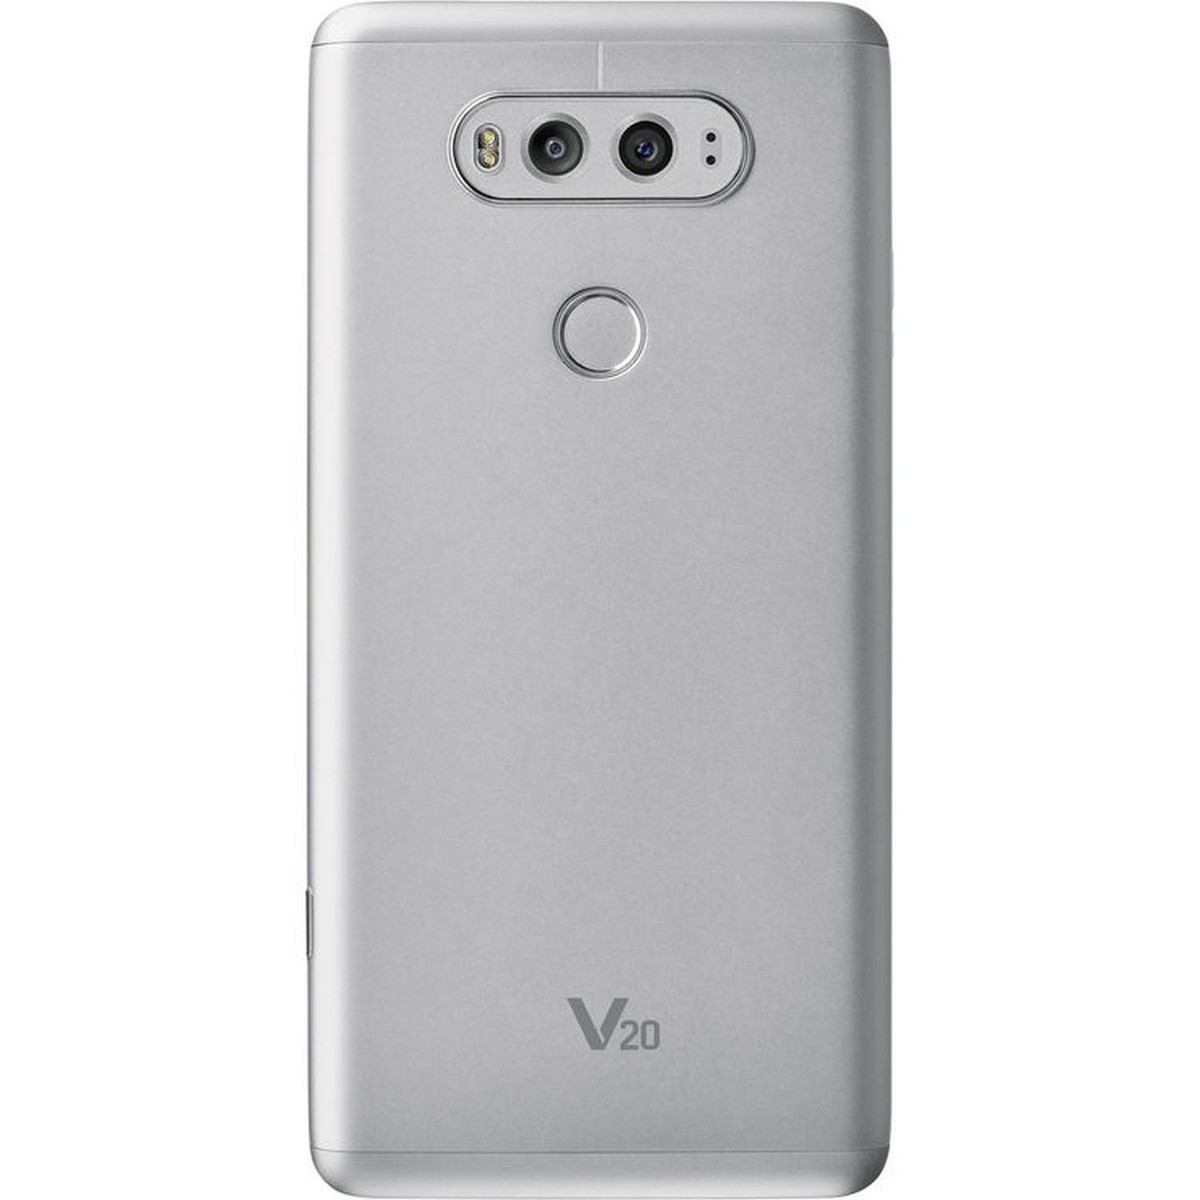 LG V20-H990 64GB Silver